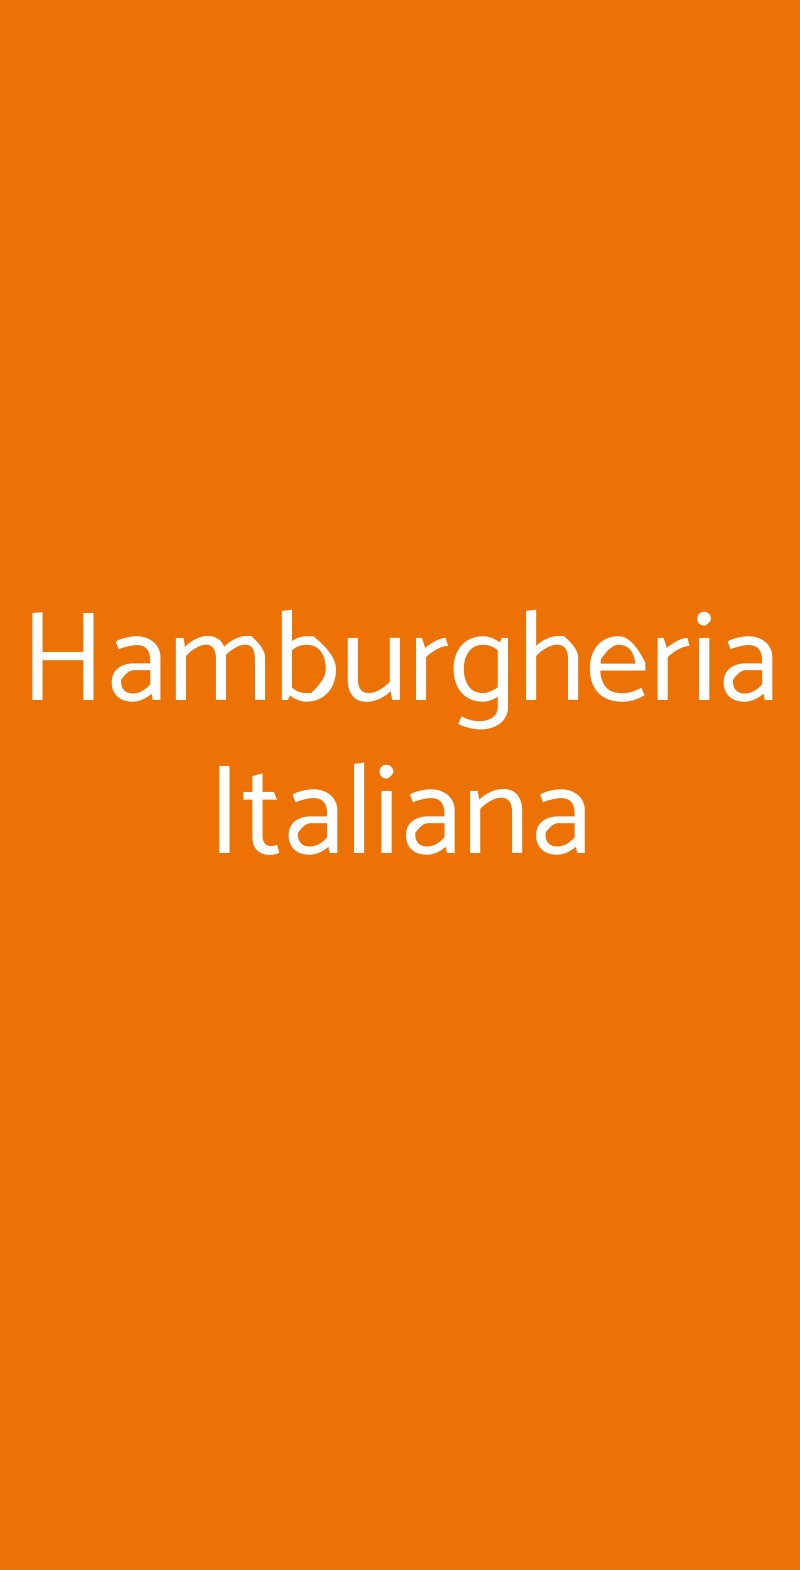 Hamburgheria Italiana Varese menù 1 pagina